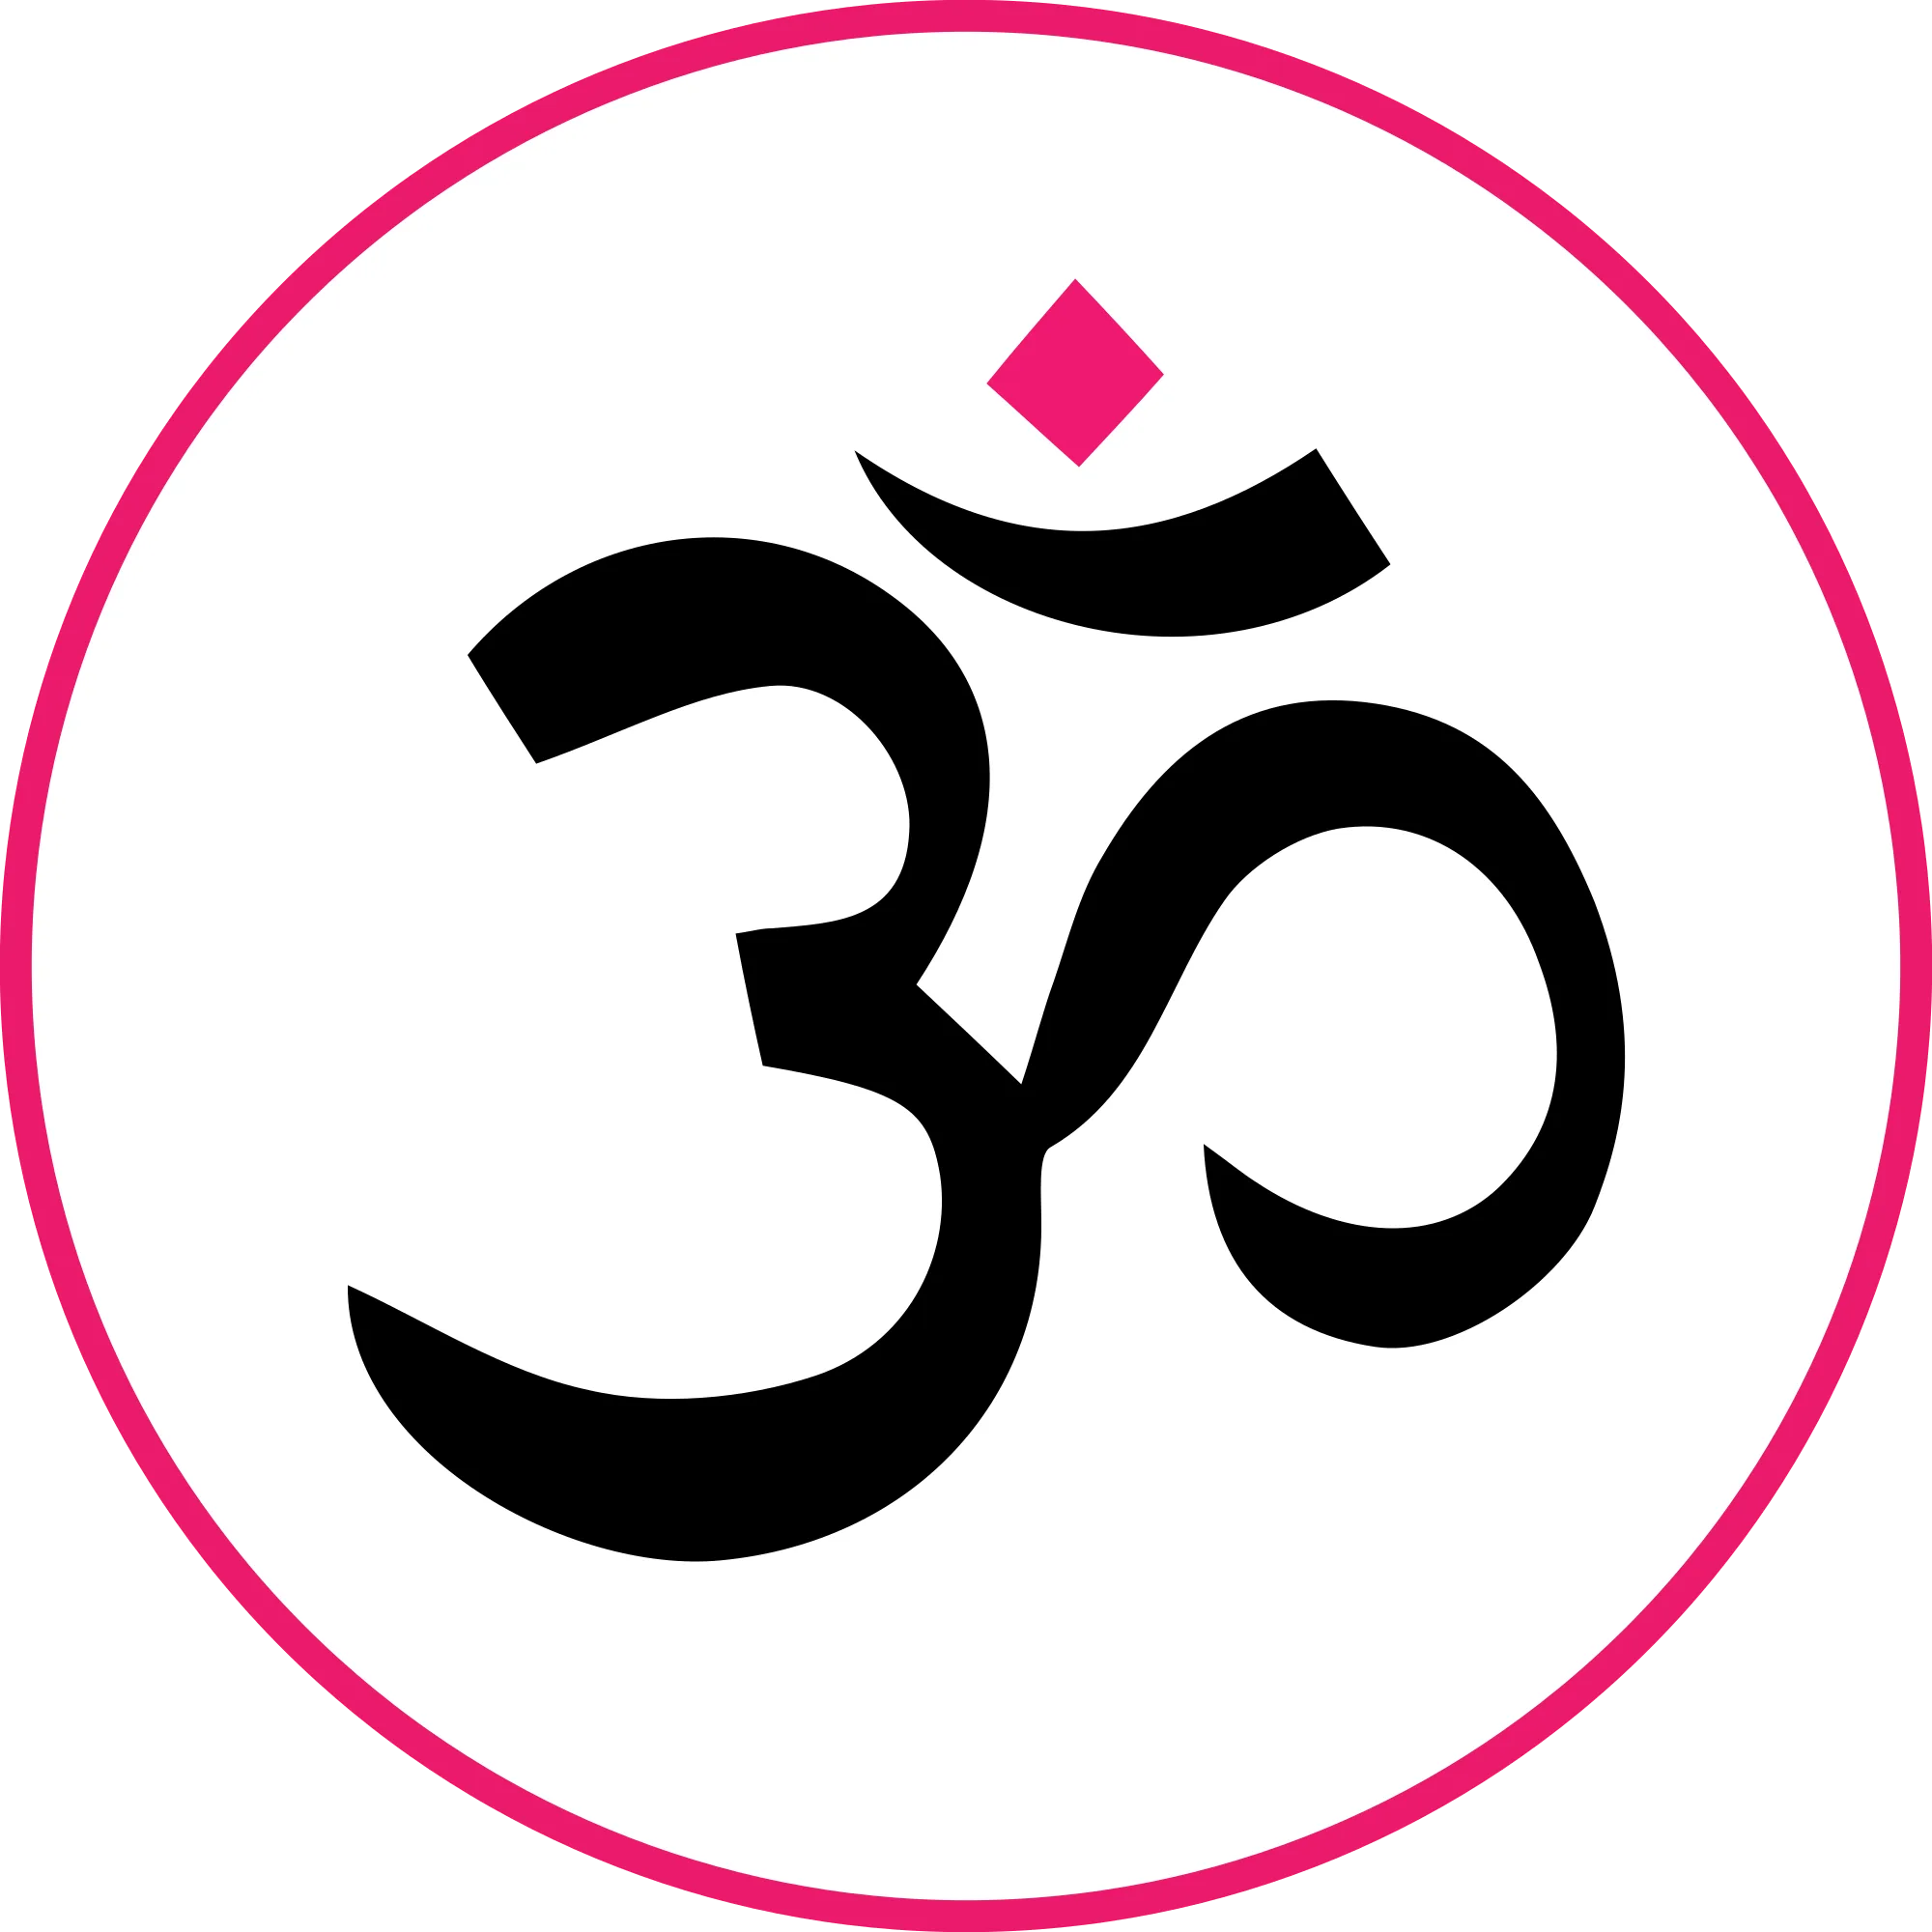 MANTRA DAO (OM) logo